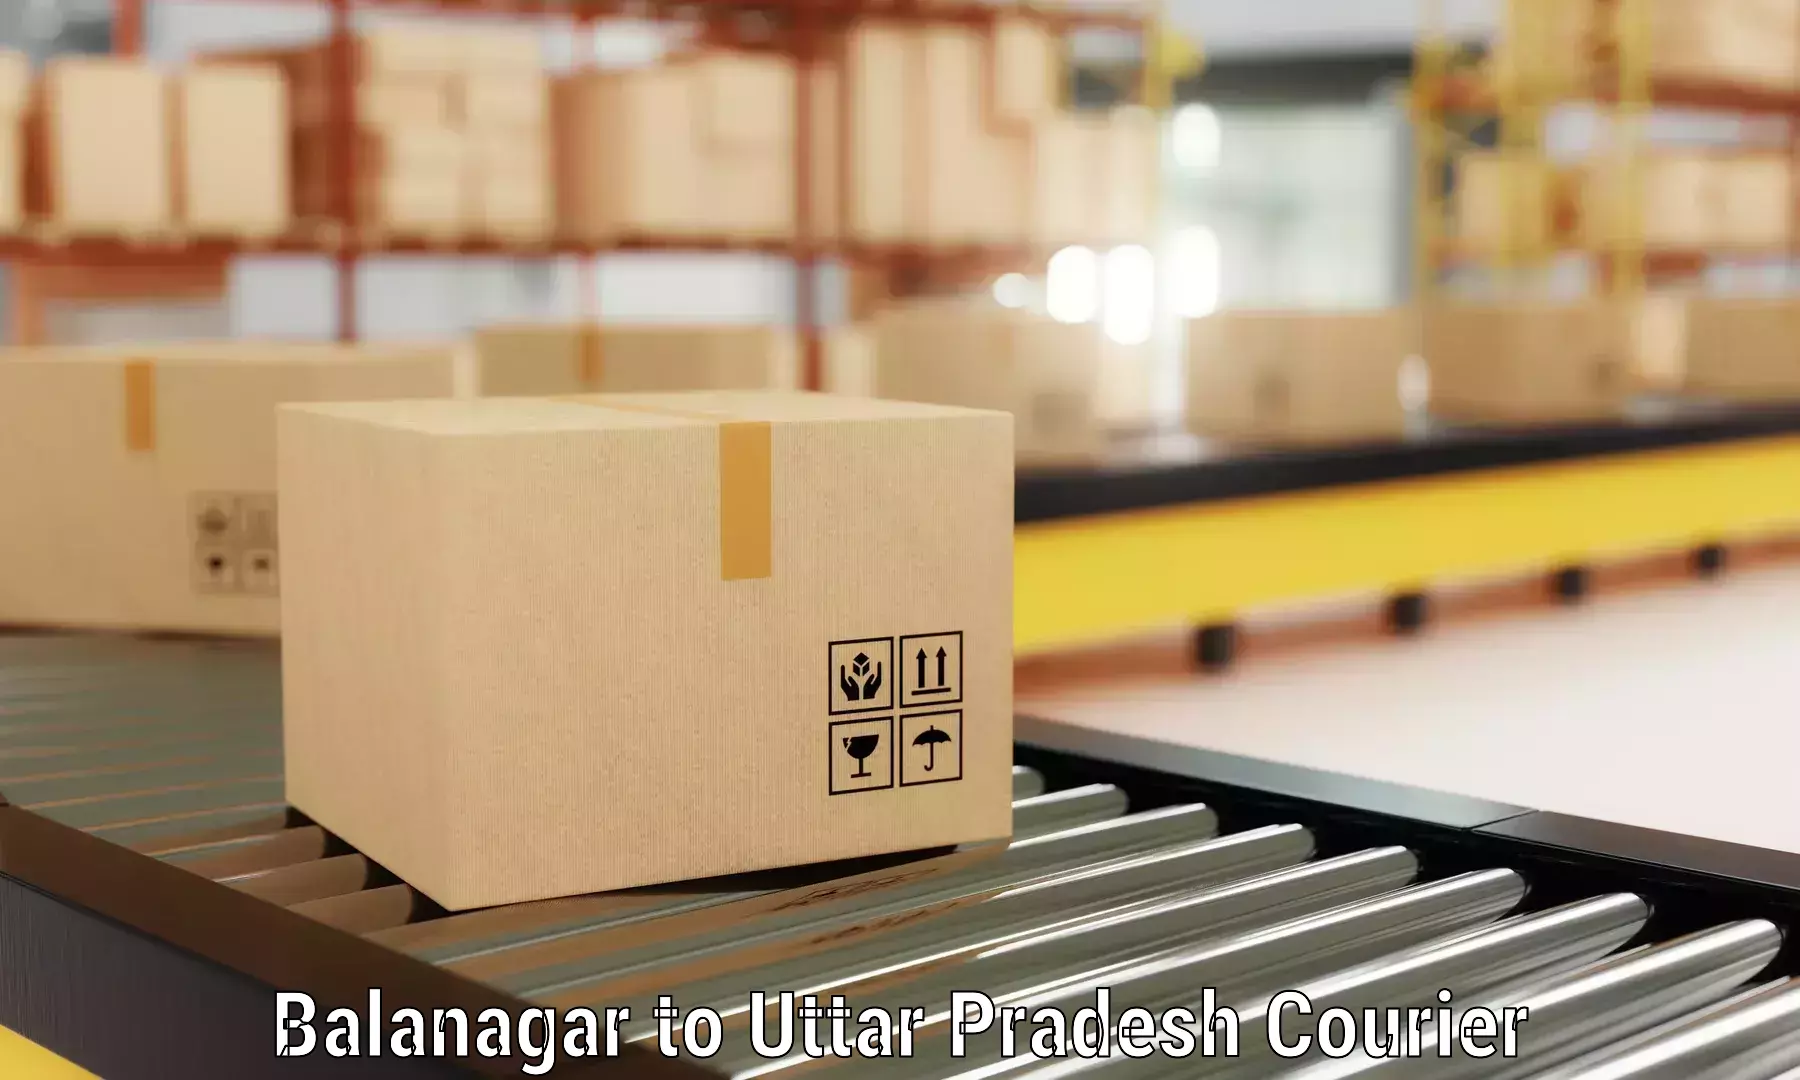 Full-service household moving in Balanagar to Kerakat